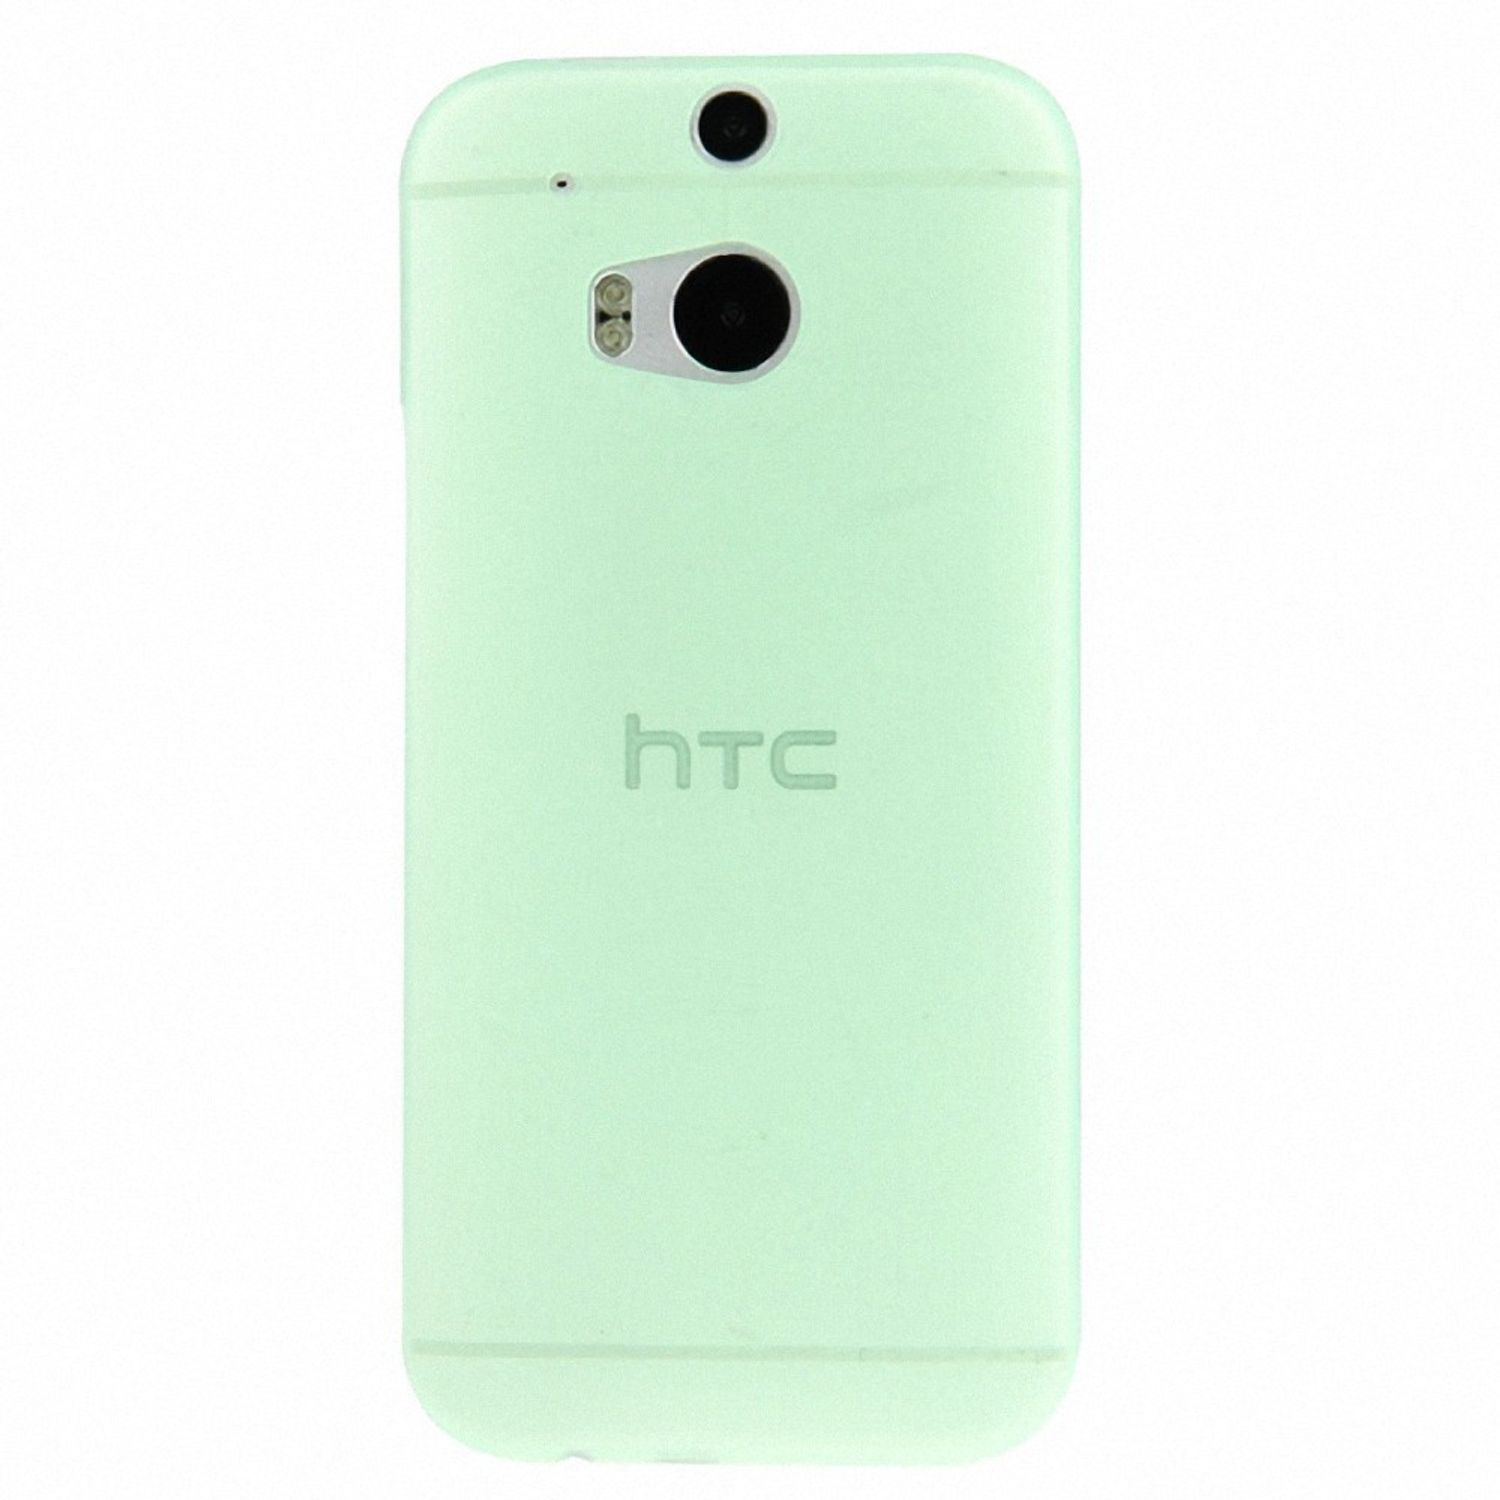 One Grün HTC, Handyhülle, KÖNIG M8, Backcover, DESIGN